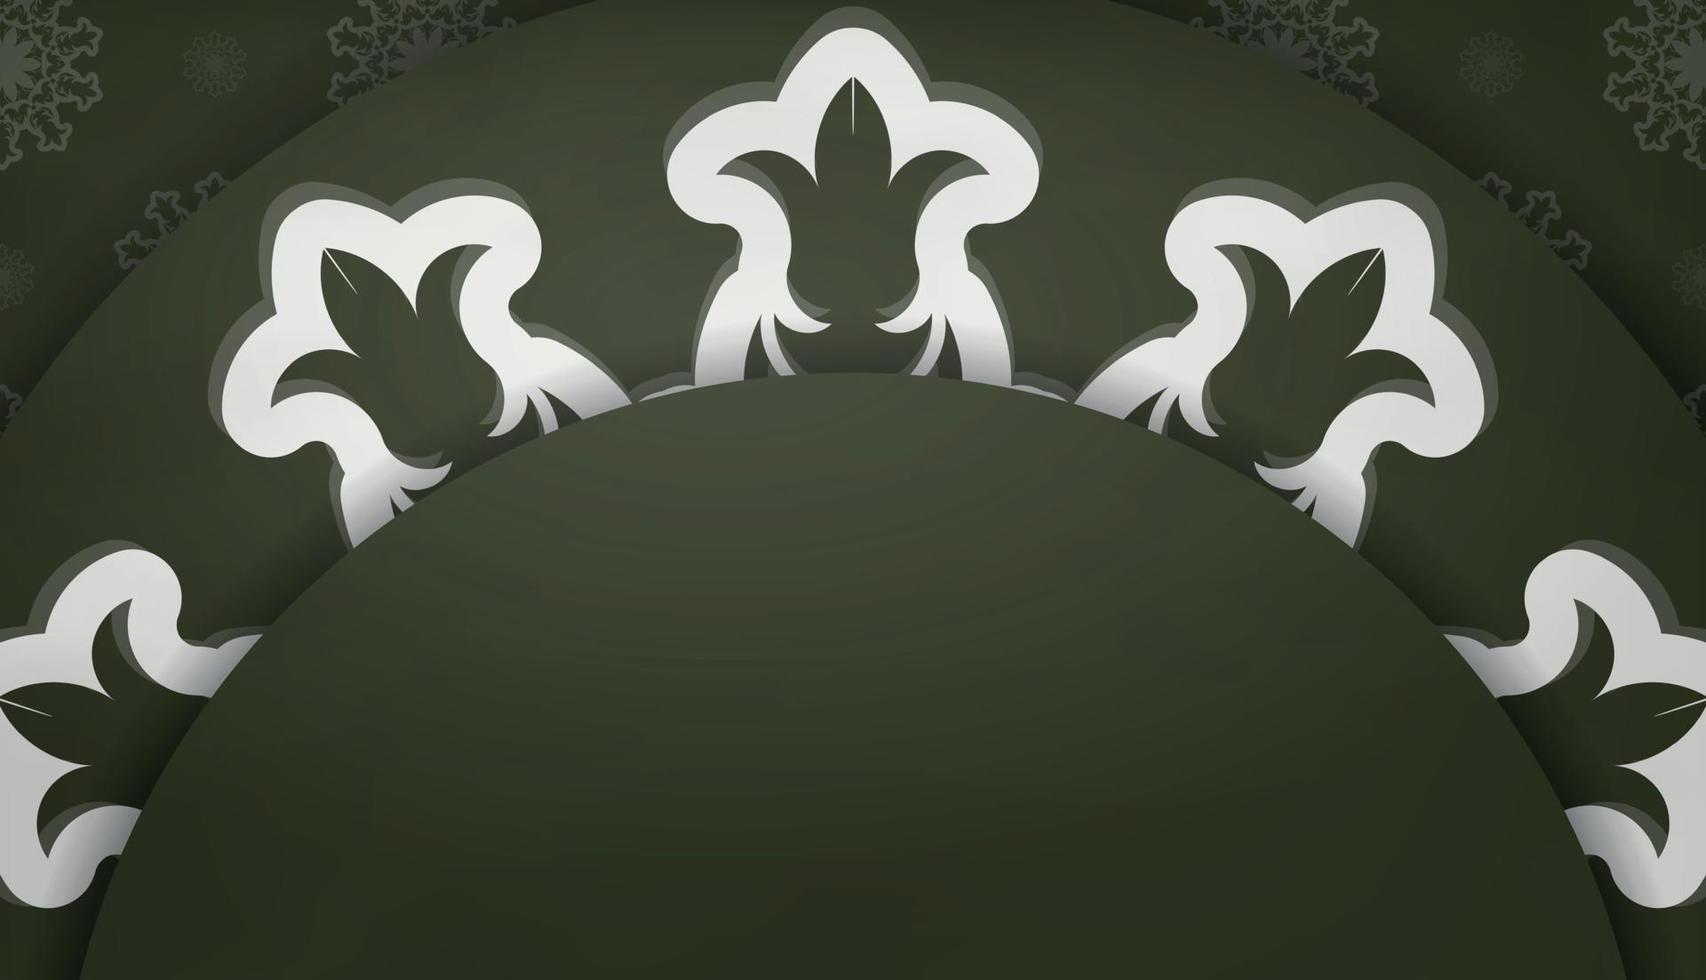 donker groen banier met wit mandala patroon en een plaats voor uw logo vector